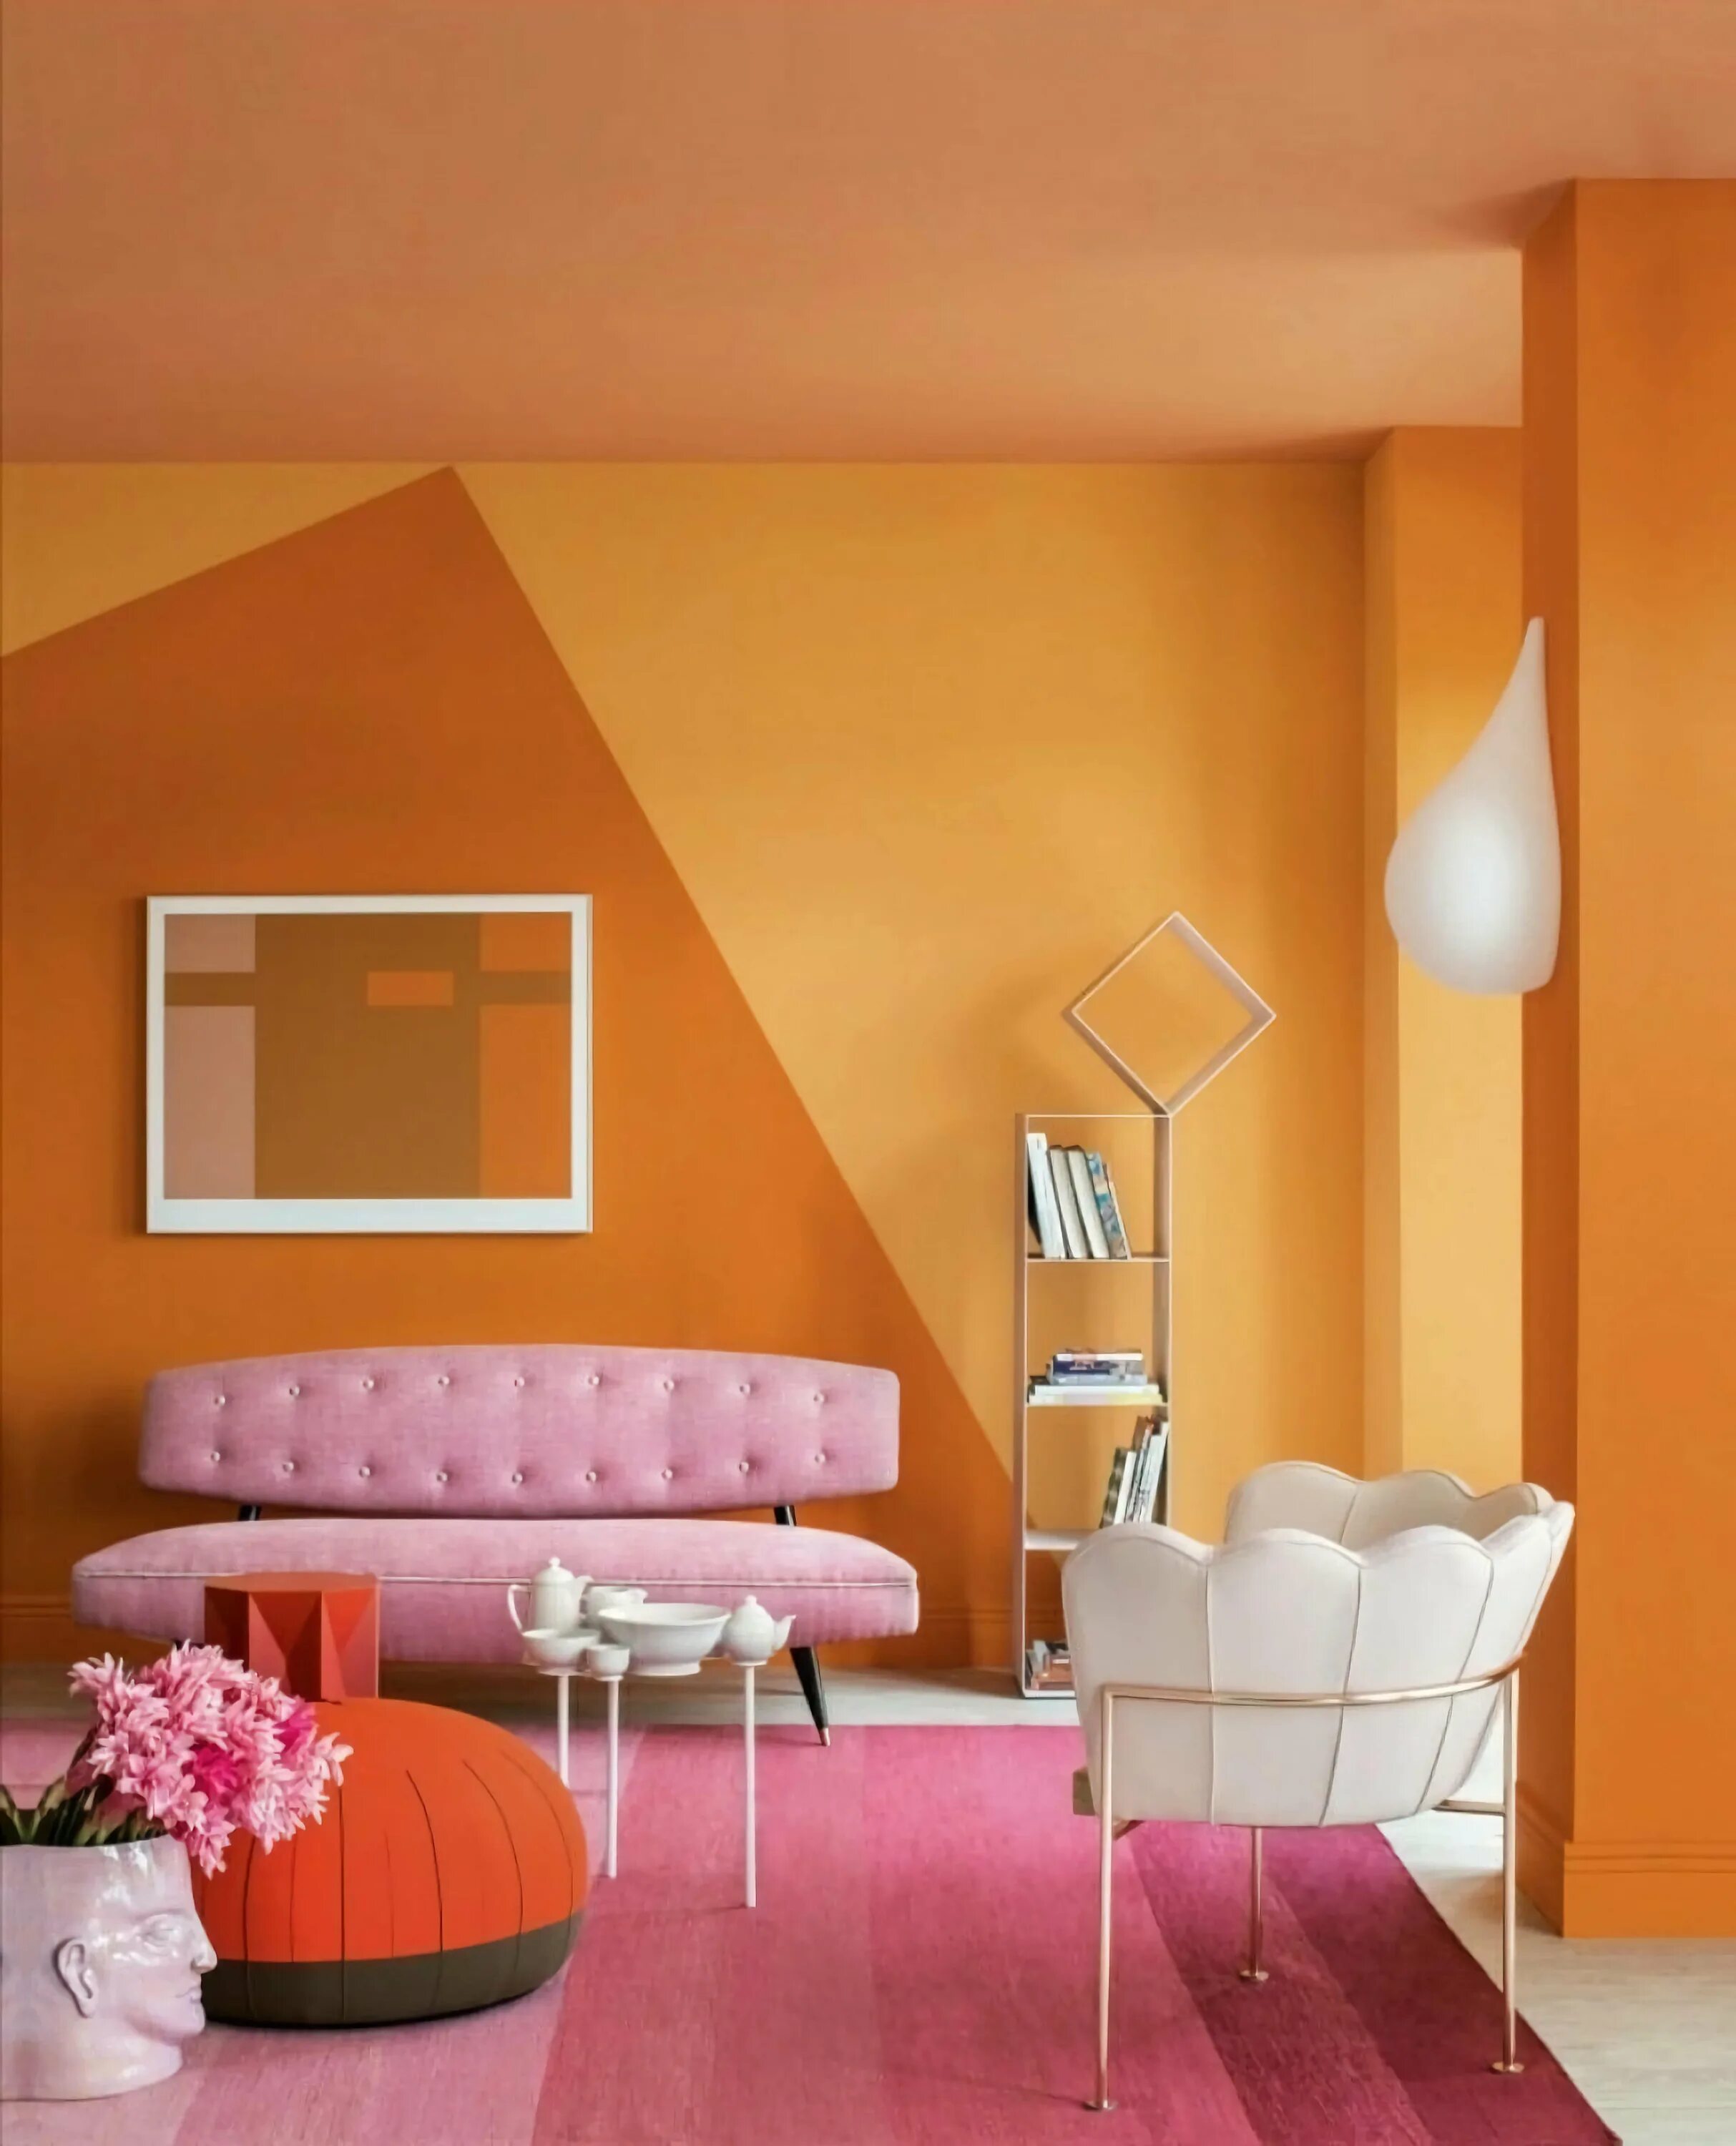 Покраска стен в интерьере. Интерьер комнаты в оранжевом цвете. Цвет стен. Оранжевая стена. Оранжевый цвет стен в интерьере.